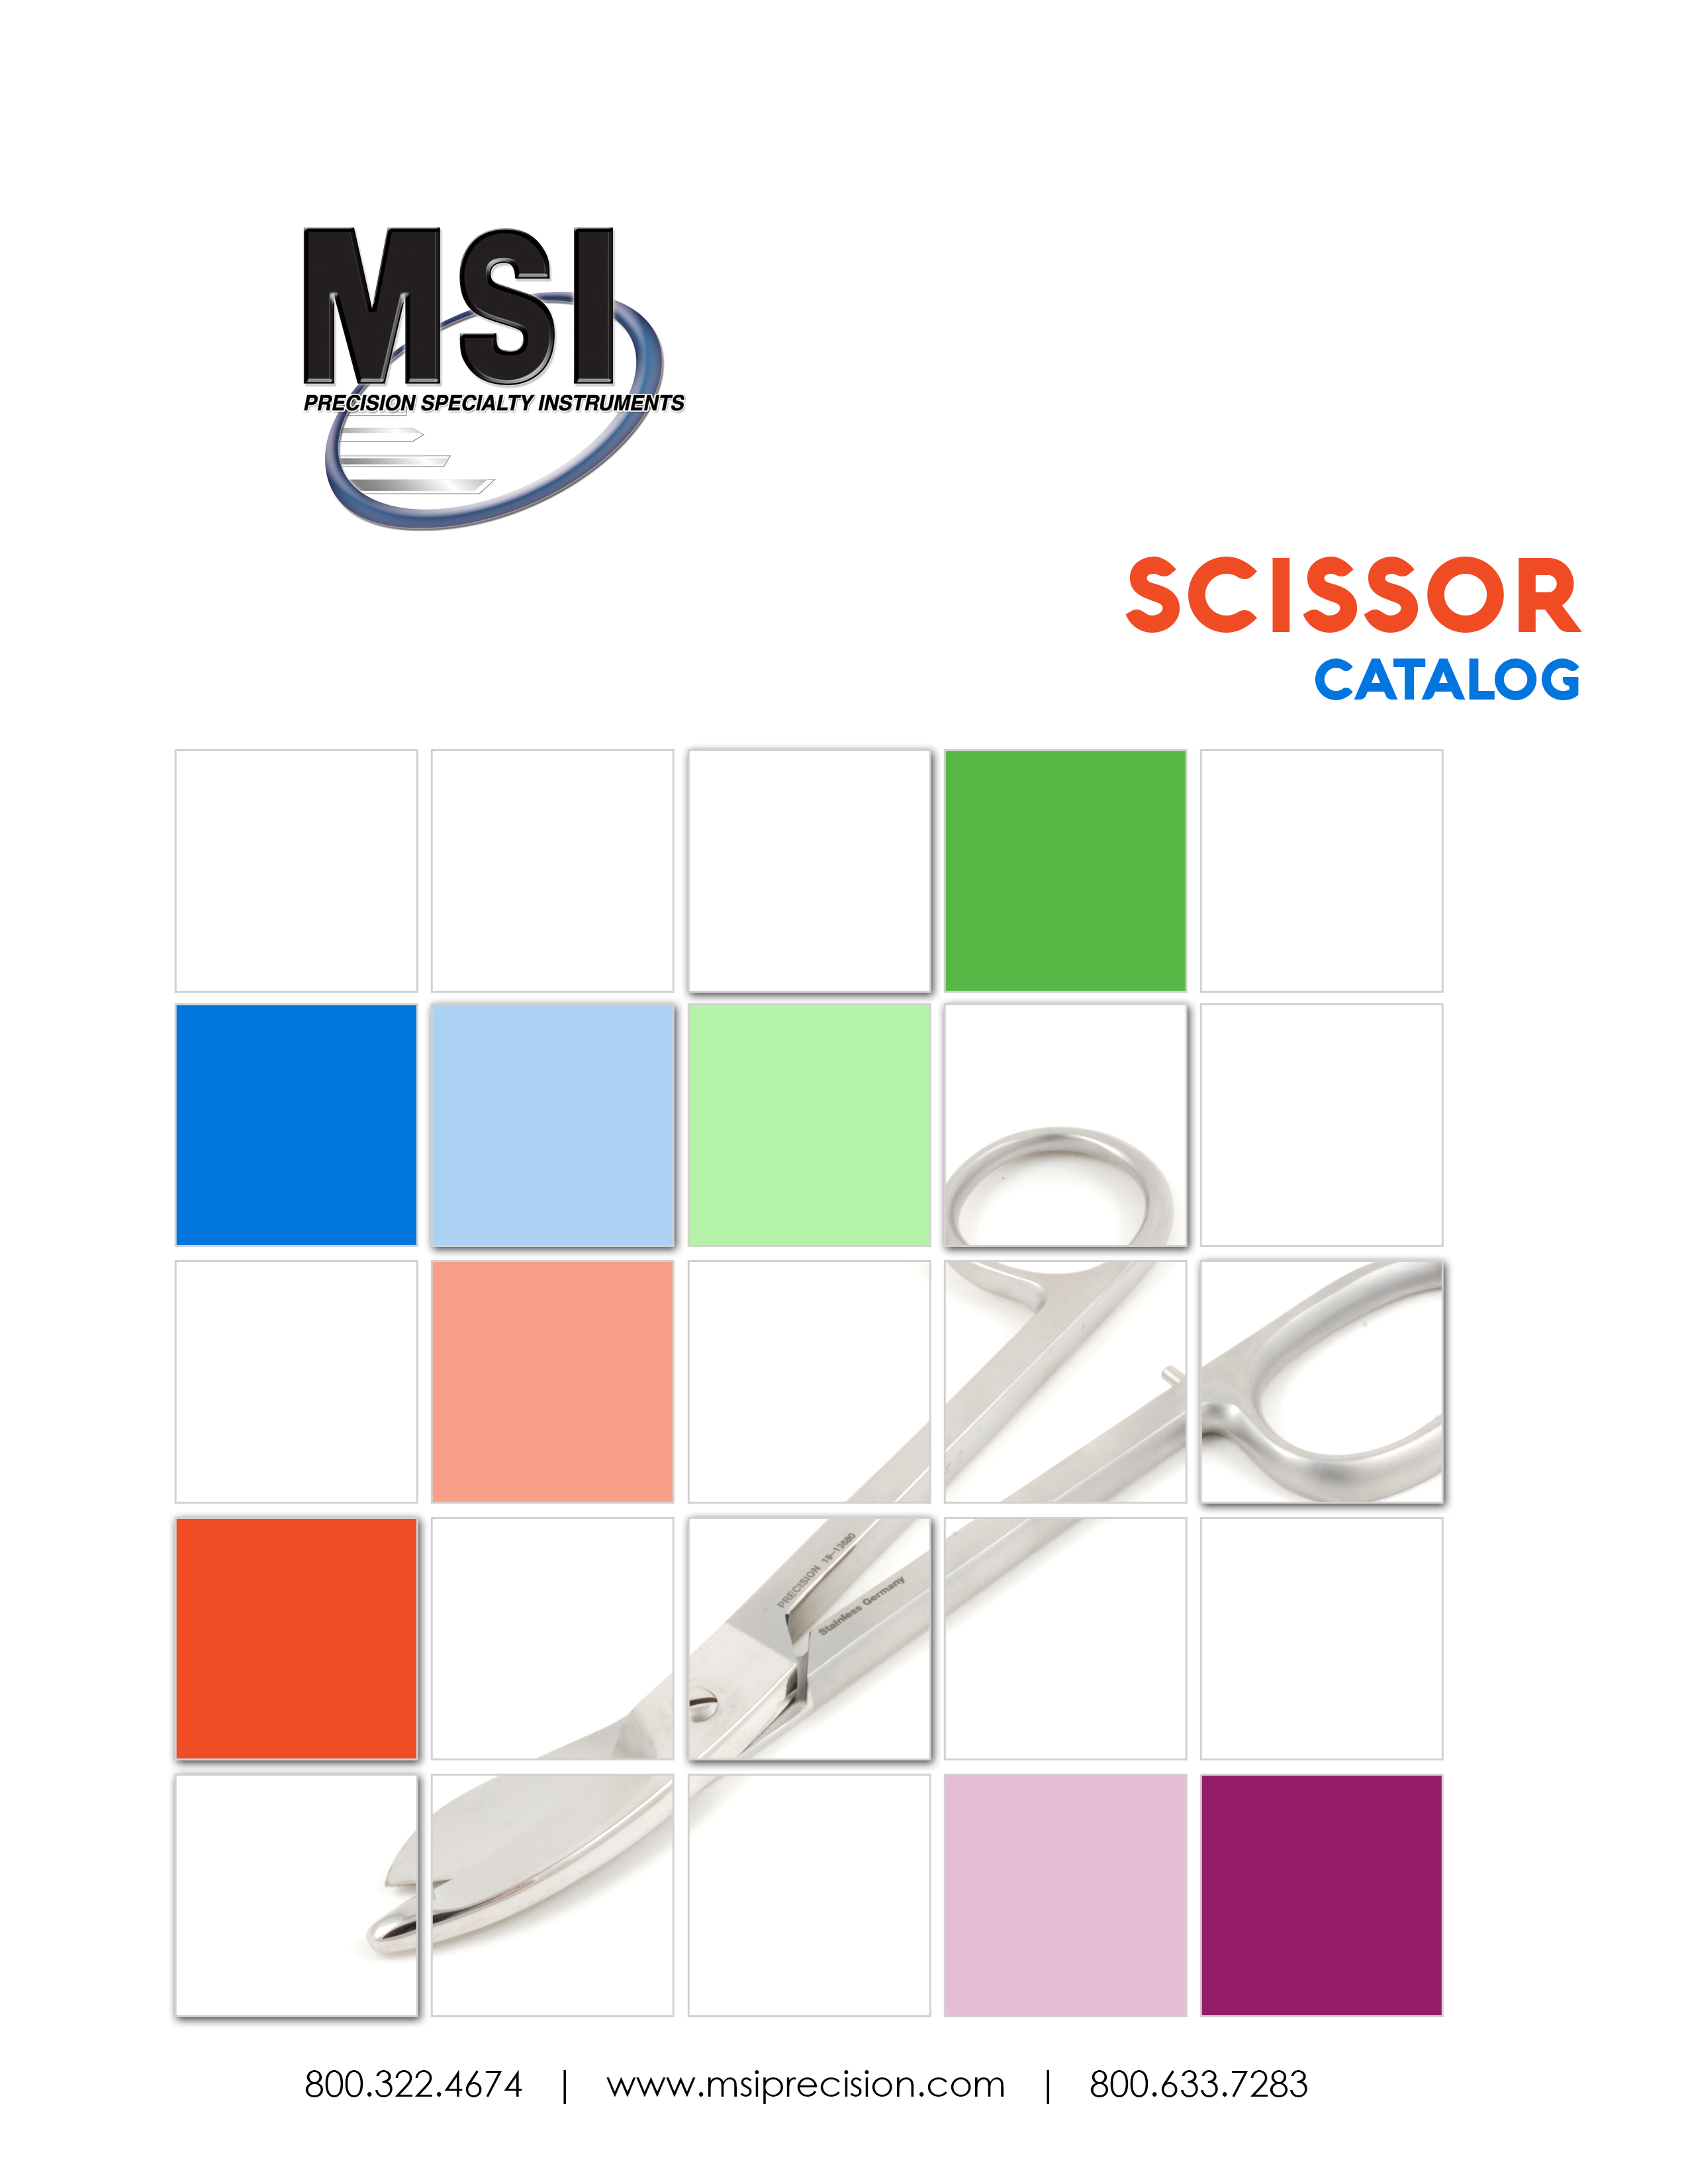 MSI Scissor Catalog